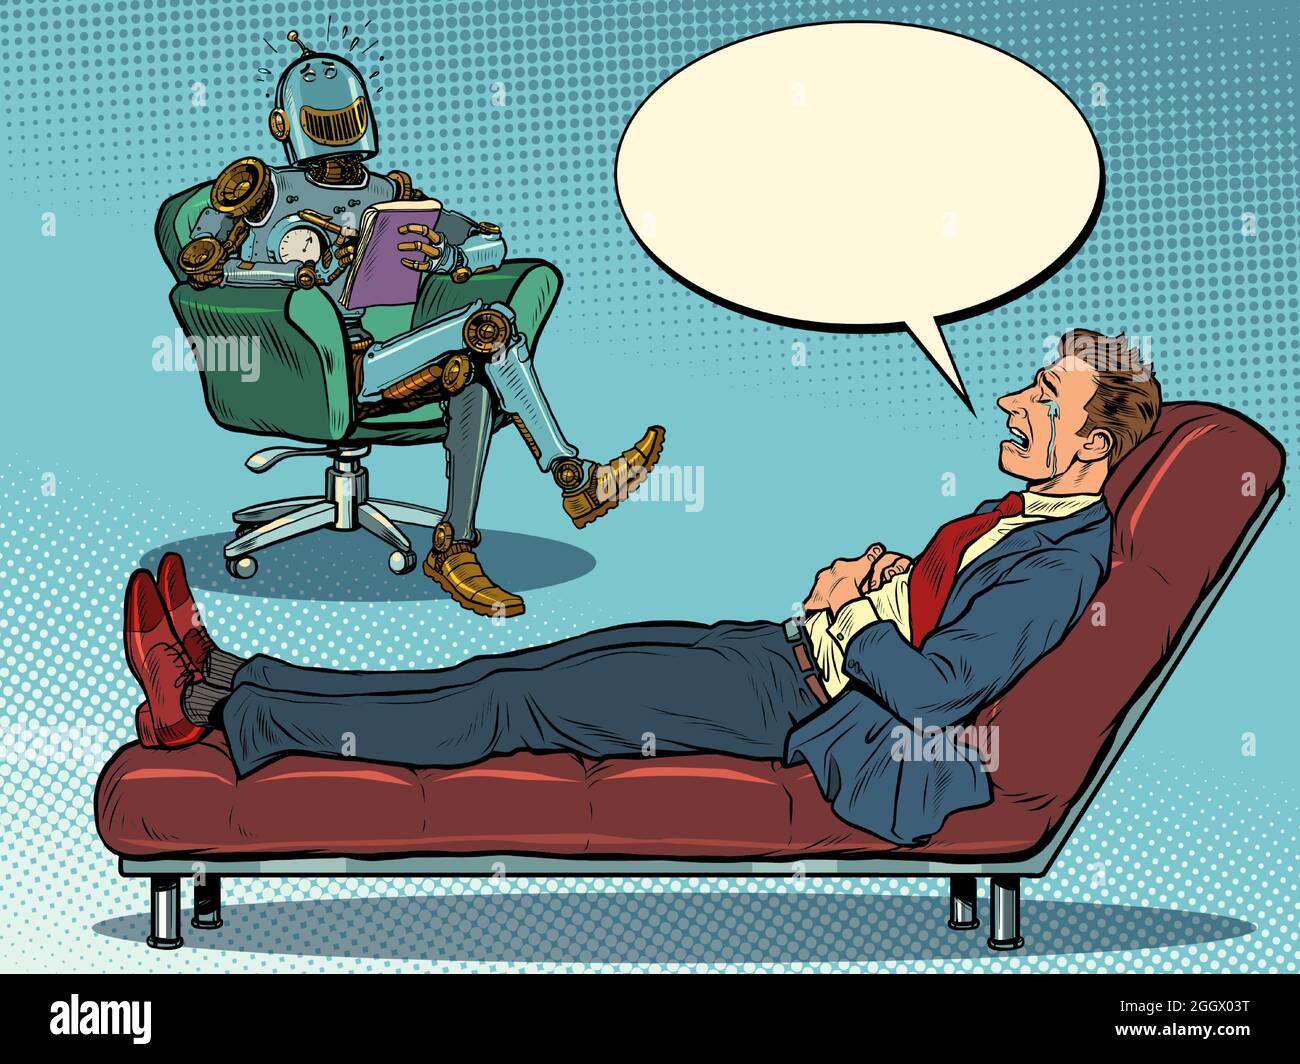 Ein Roboter-Psychotherapeut bei einer Psychotherapiesitzung mit einem Patienten, lacht und hört einem Geschäftsmann zu, sitzt auf einem Stuhl und macht Notizen in einem Notizbuch Stock Vektor